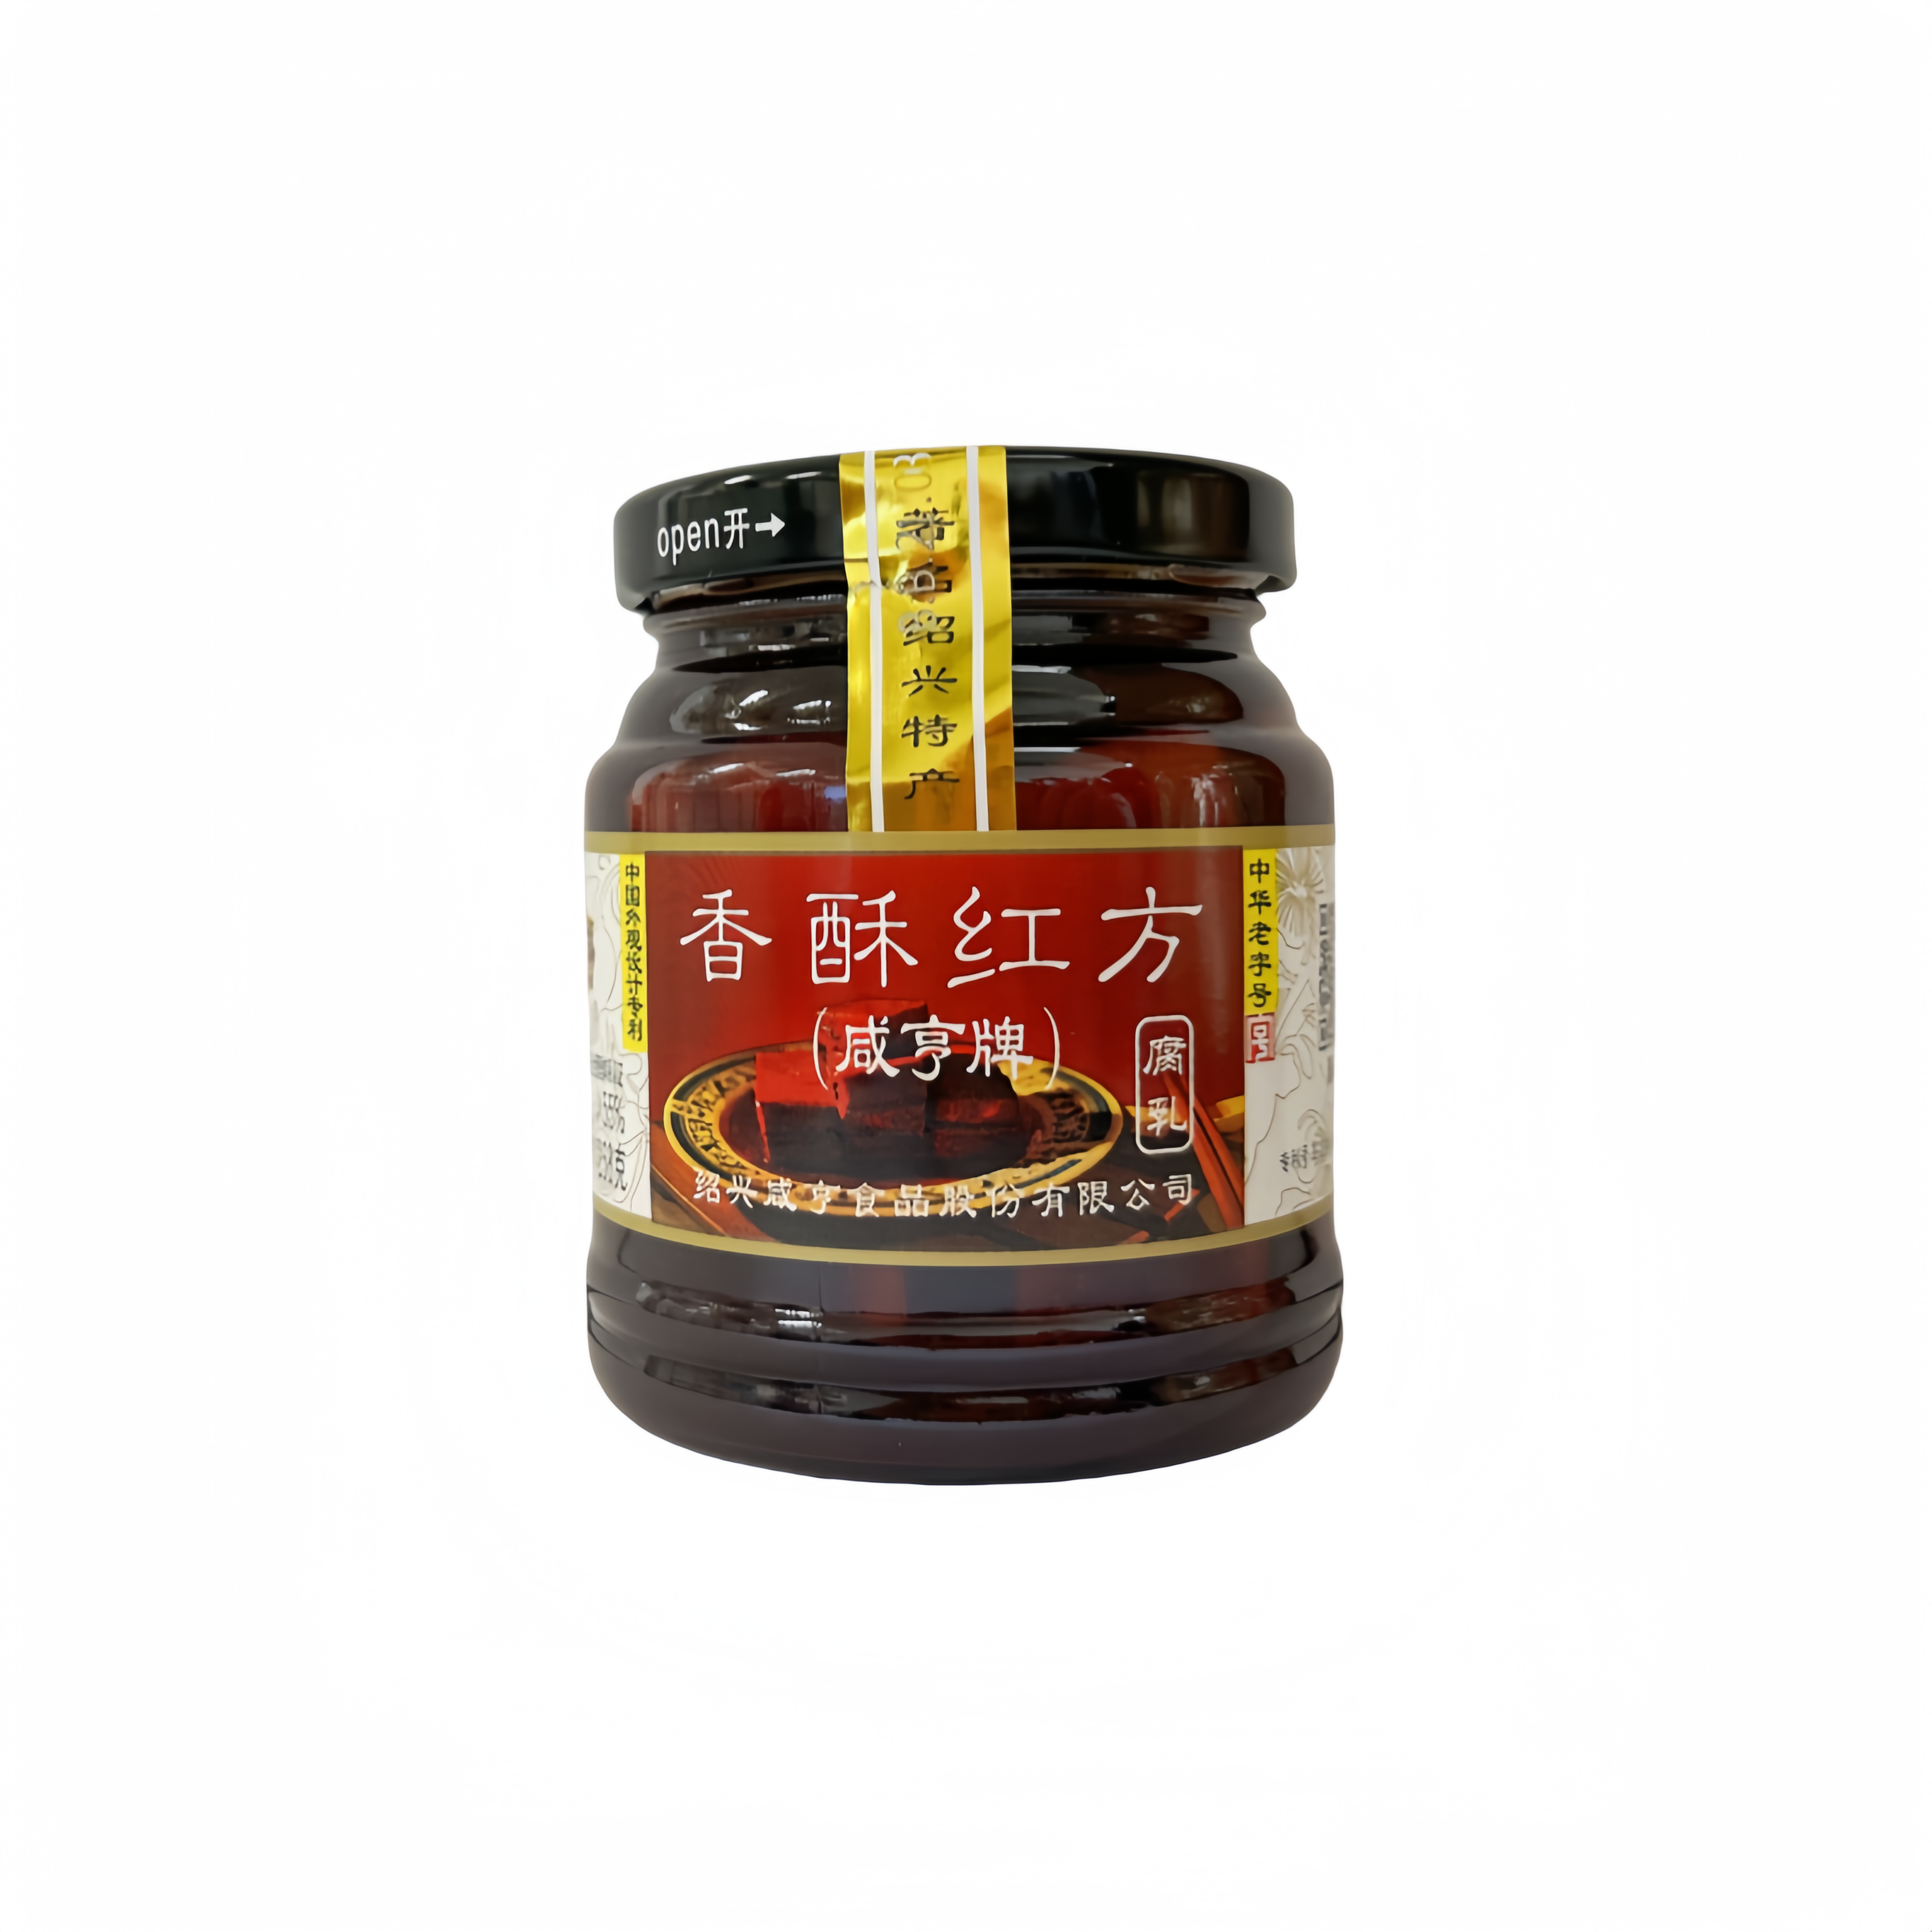 Fermented Tofu 258g XSHF Xian Heng China